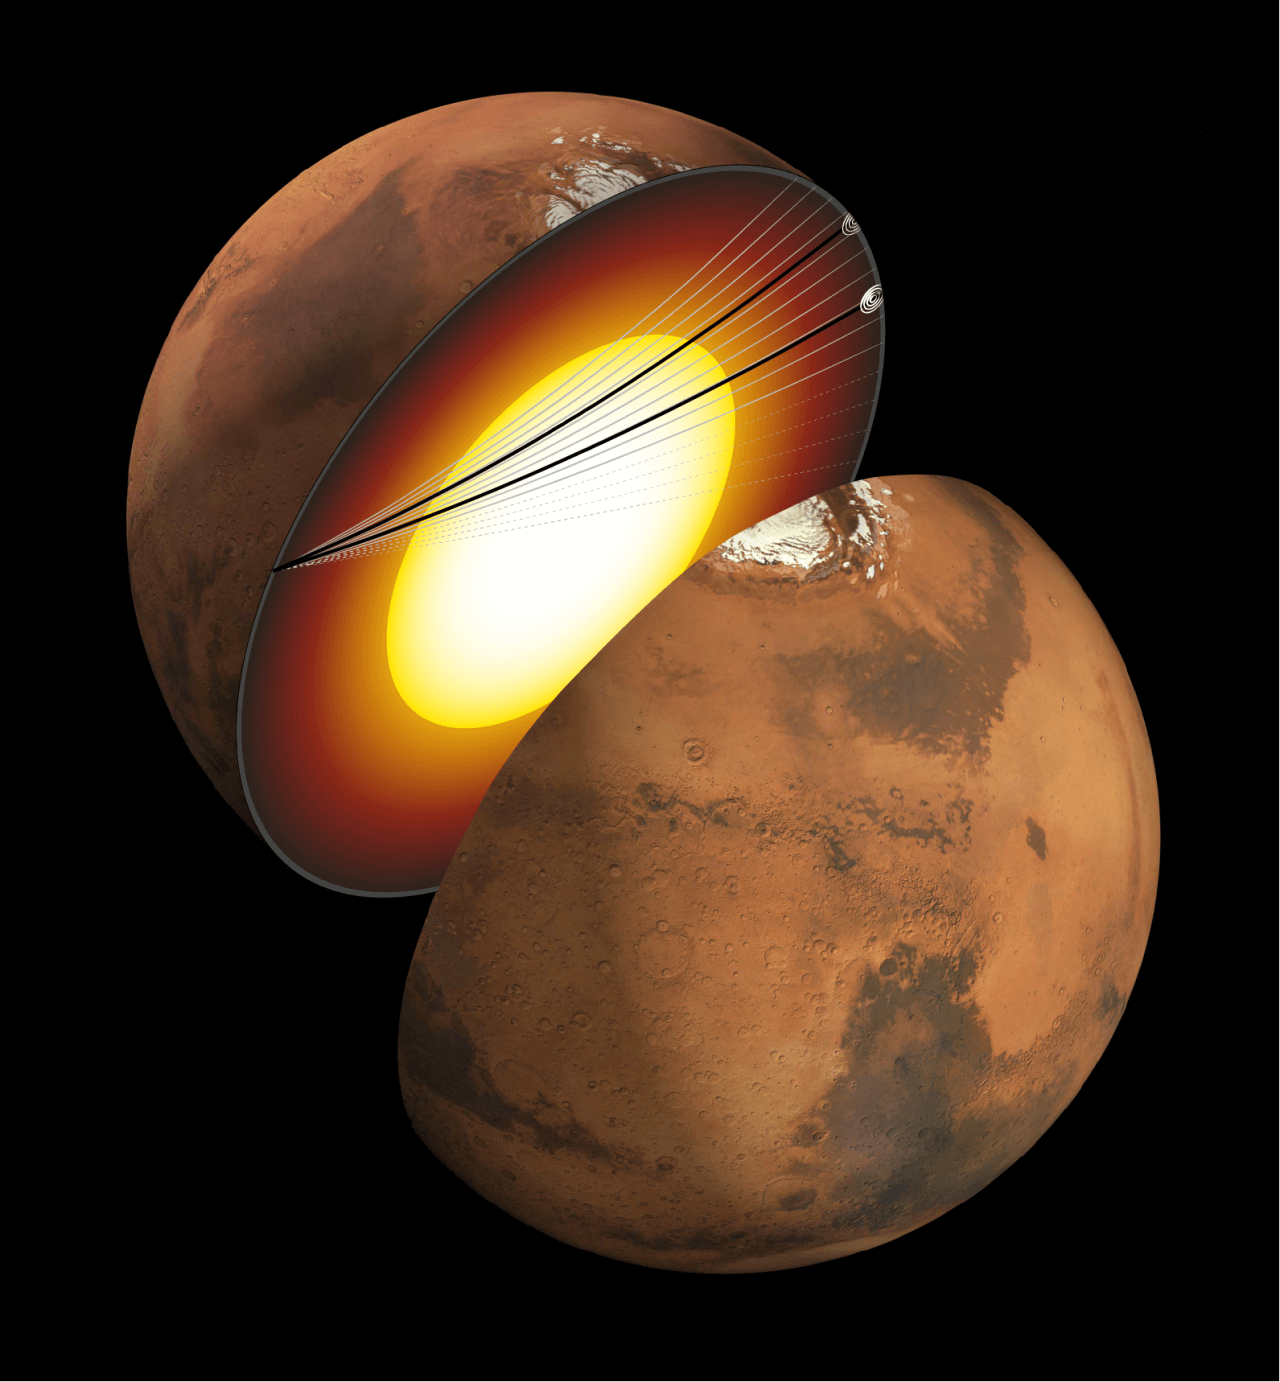 【▲ 図: 今回解析された2つの地震波は、いずれも火星の中心部を通過している。これにより、火星の核は全体が液体であることが判明した。 (Image Credit: NASA/JPL & Nicholas Schmerr.) 】